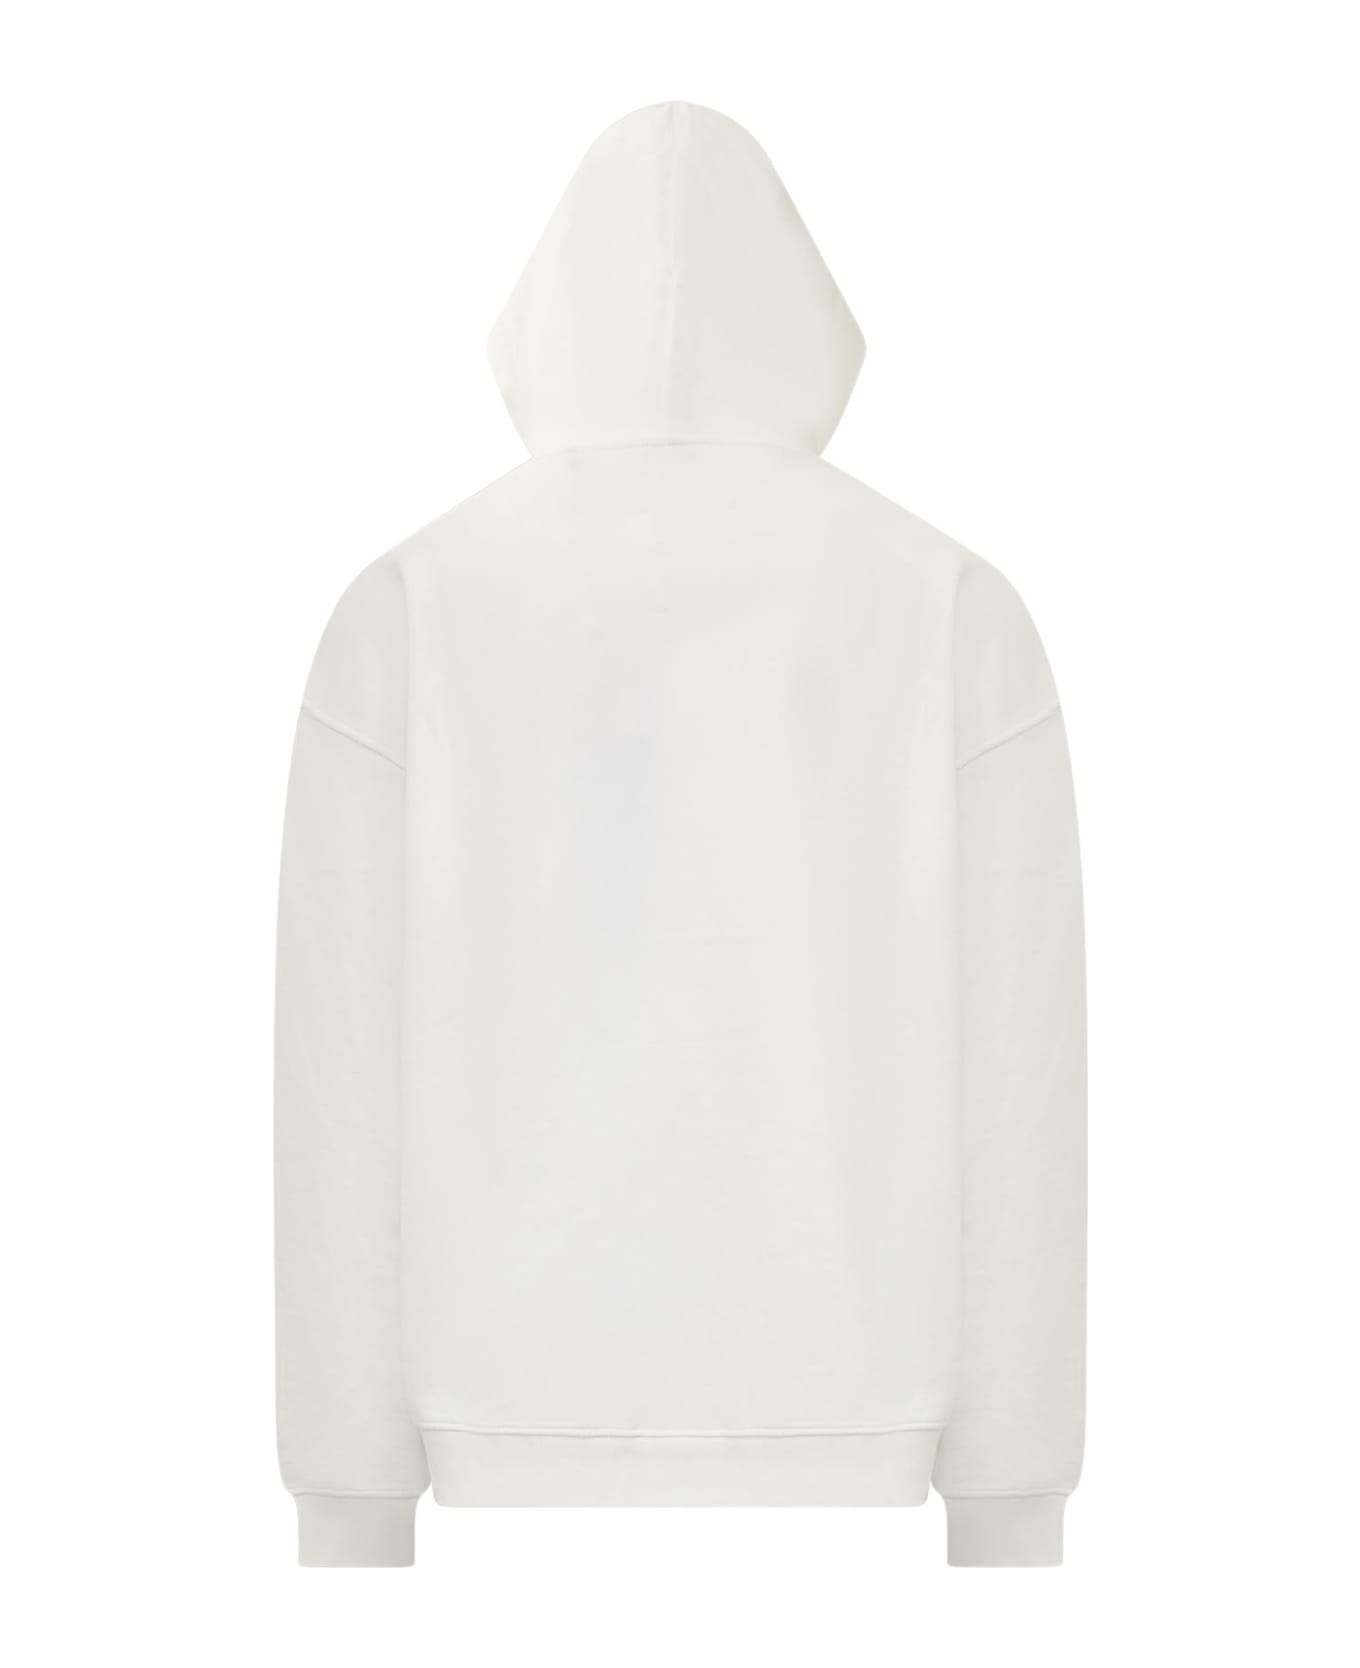 Diesel Hoodded Sweatshirt - Bianco